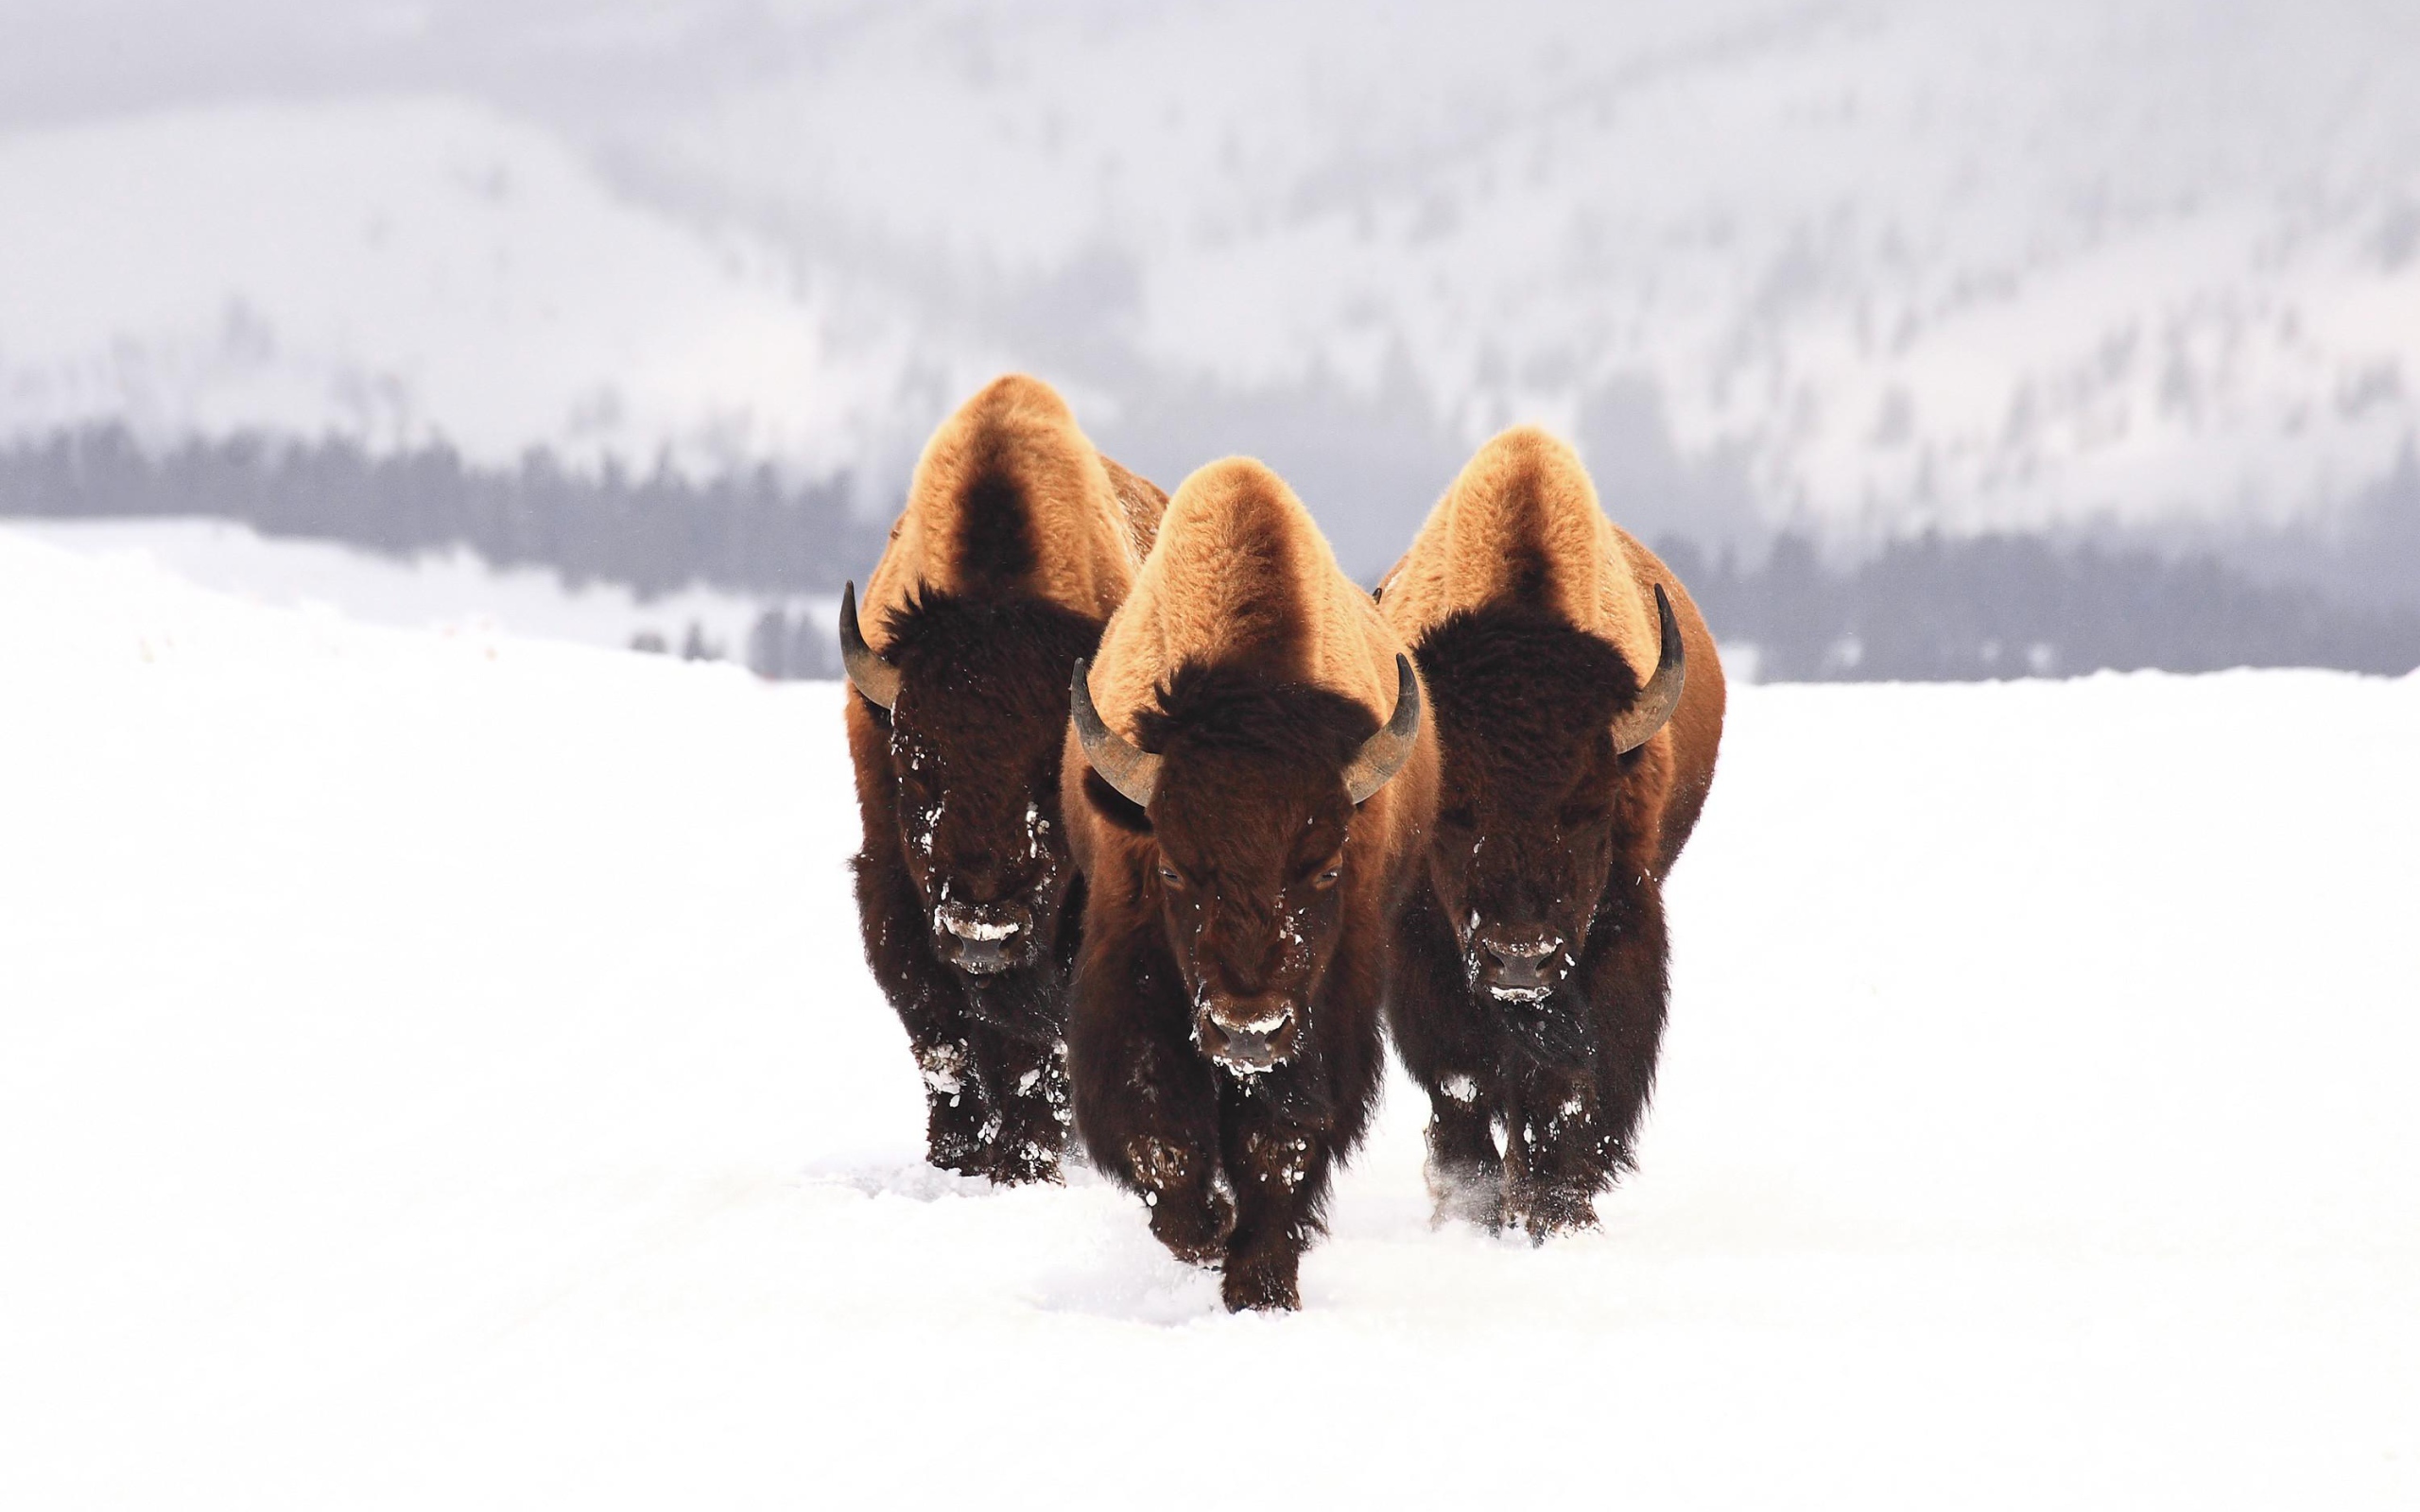 Три бизона идут по заснеженному полю зимой